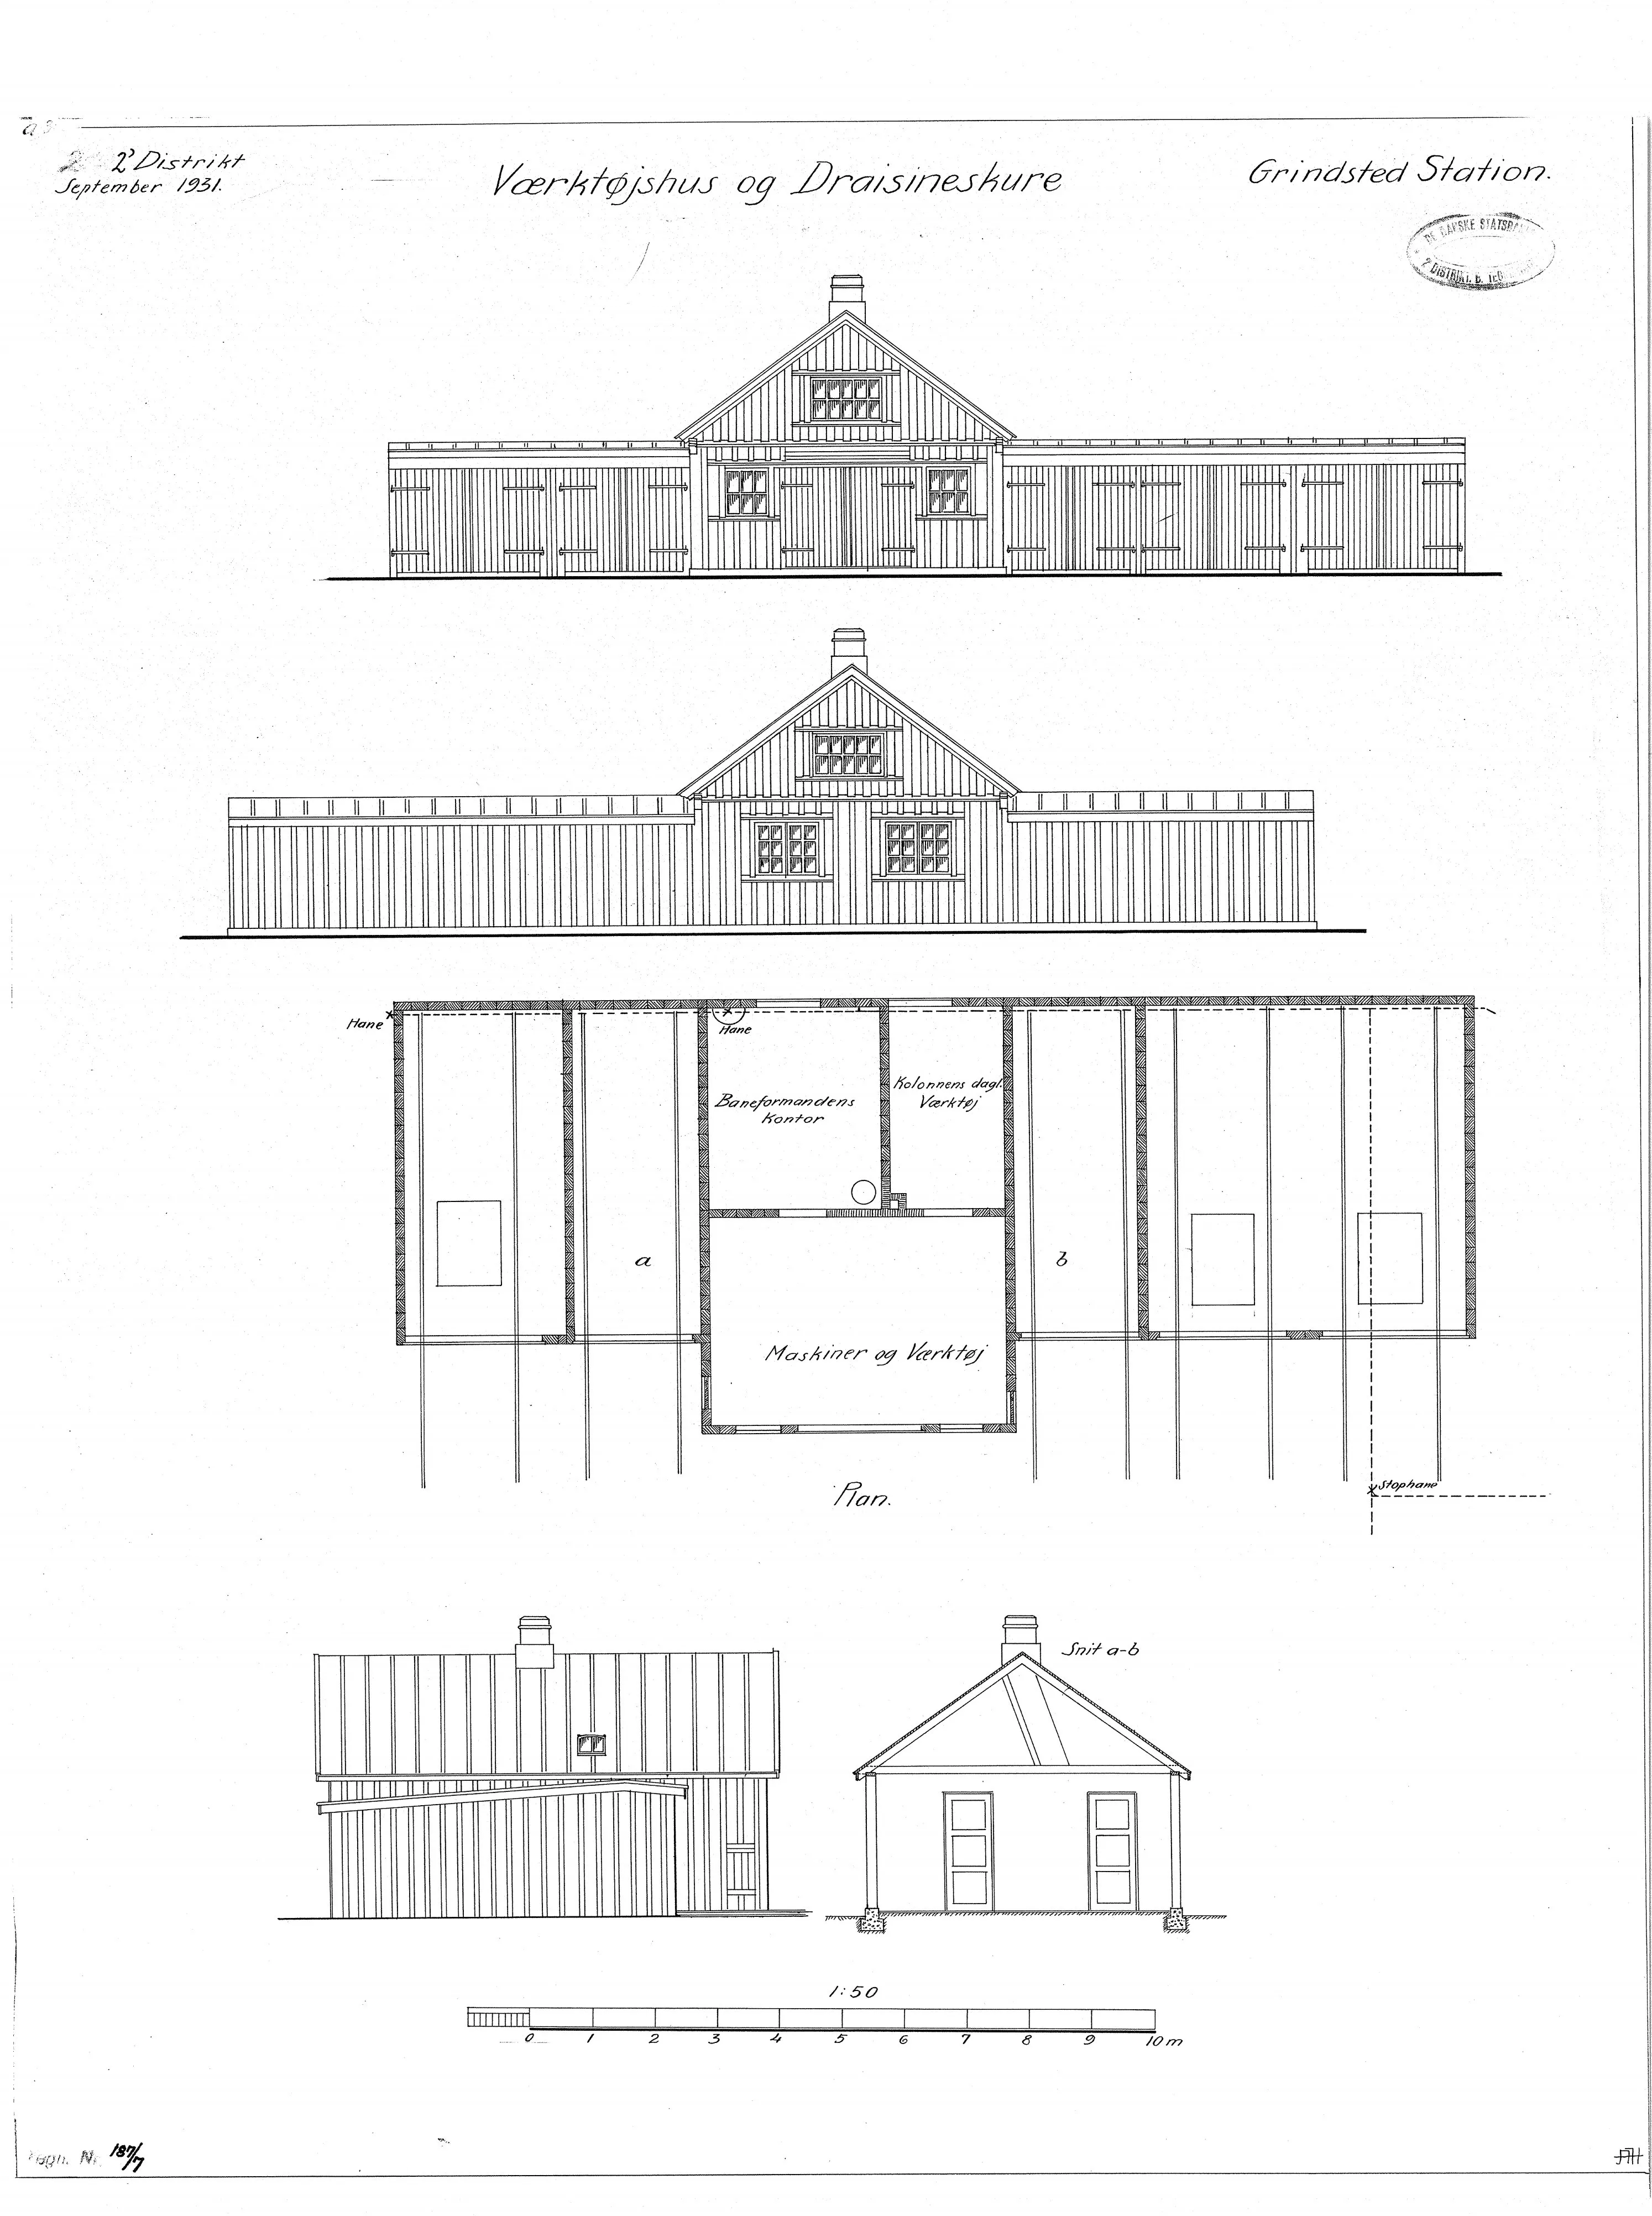 Tegning af Værktøjshus og dræsineskure ved Grindsted Station.